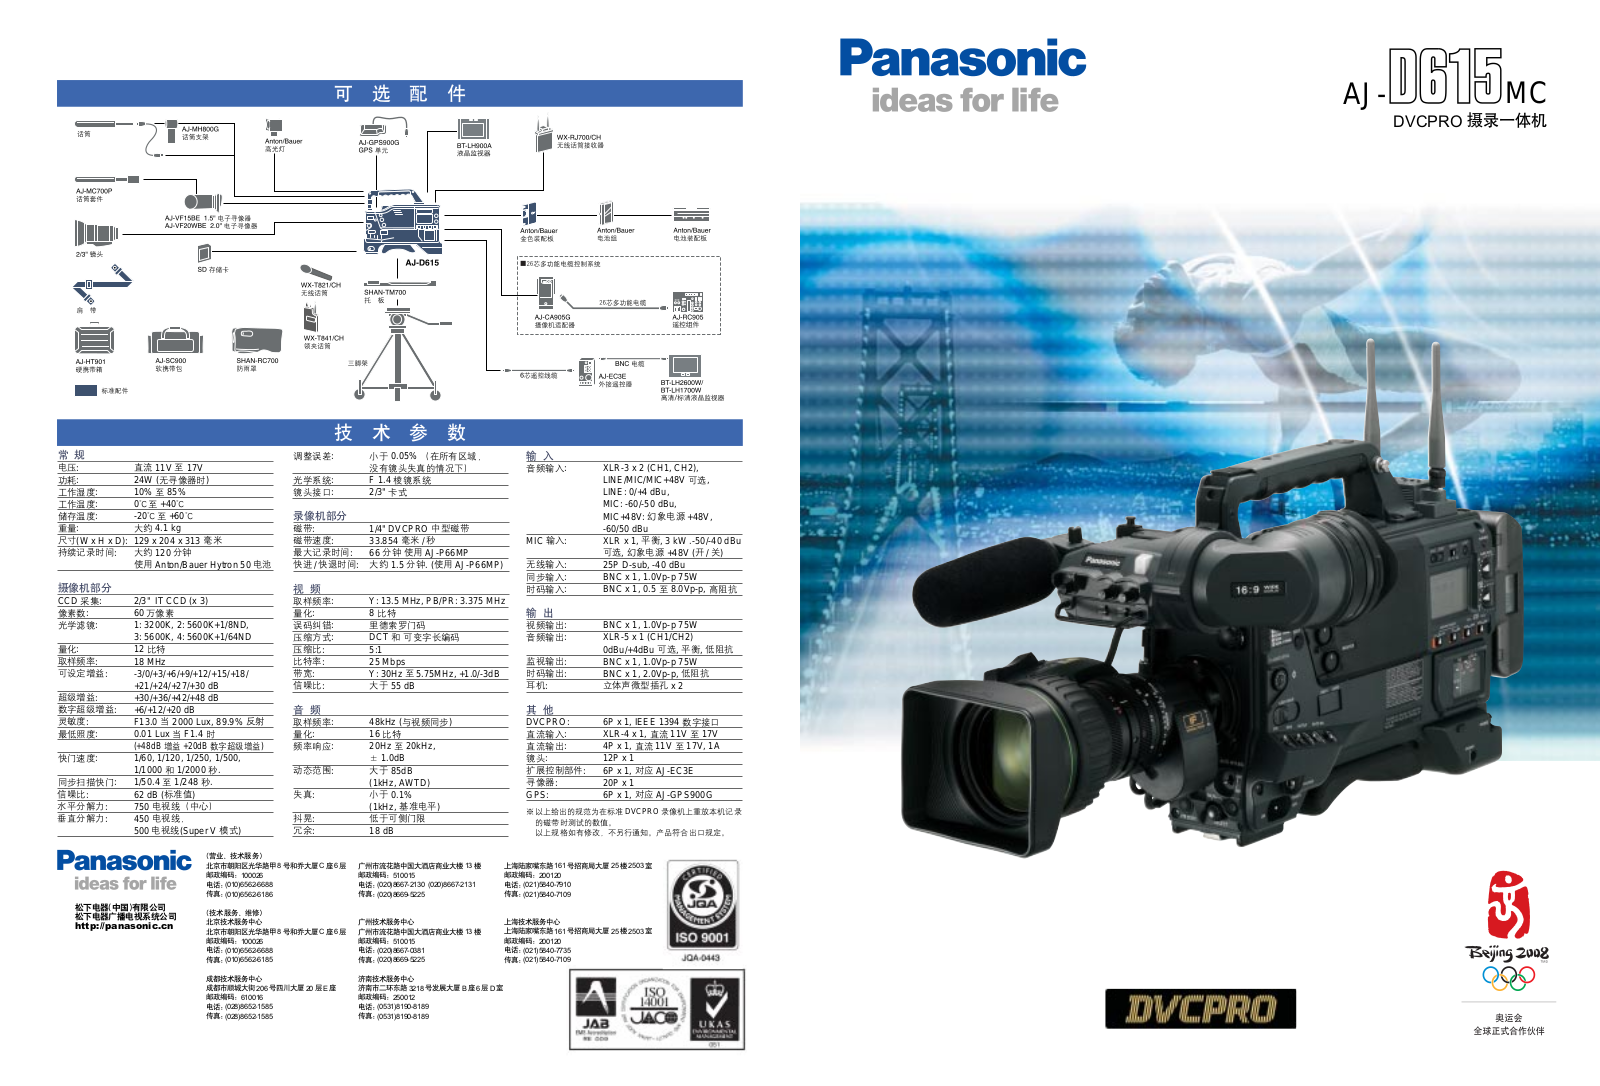 Panasonic AJ-D615MC User Manual